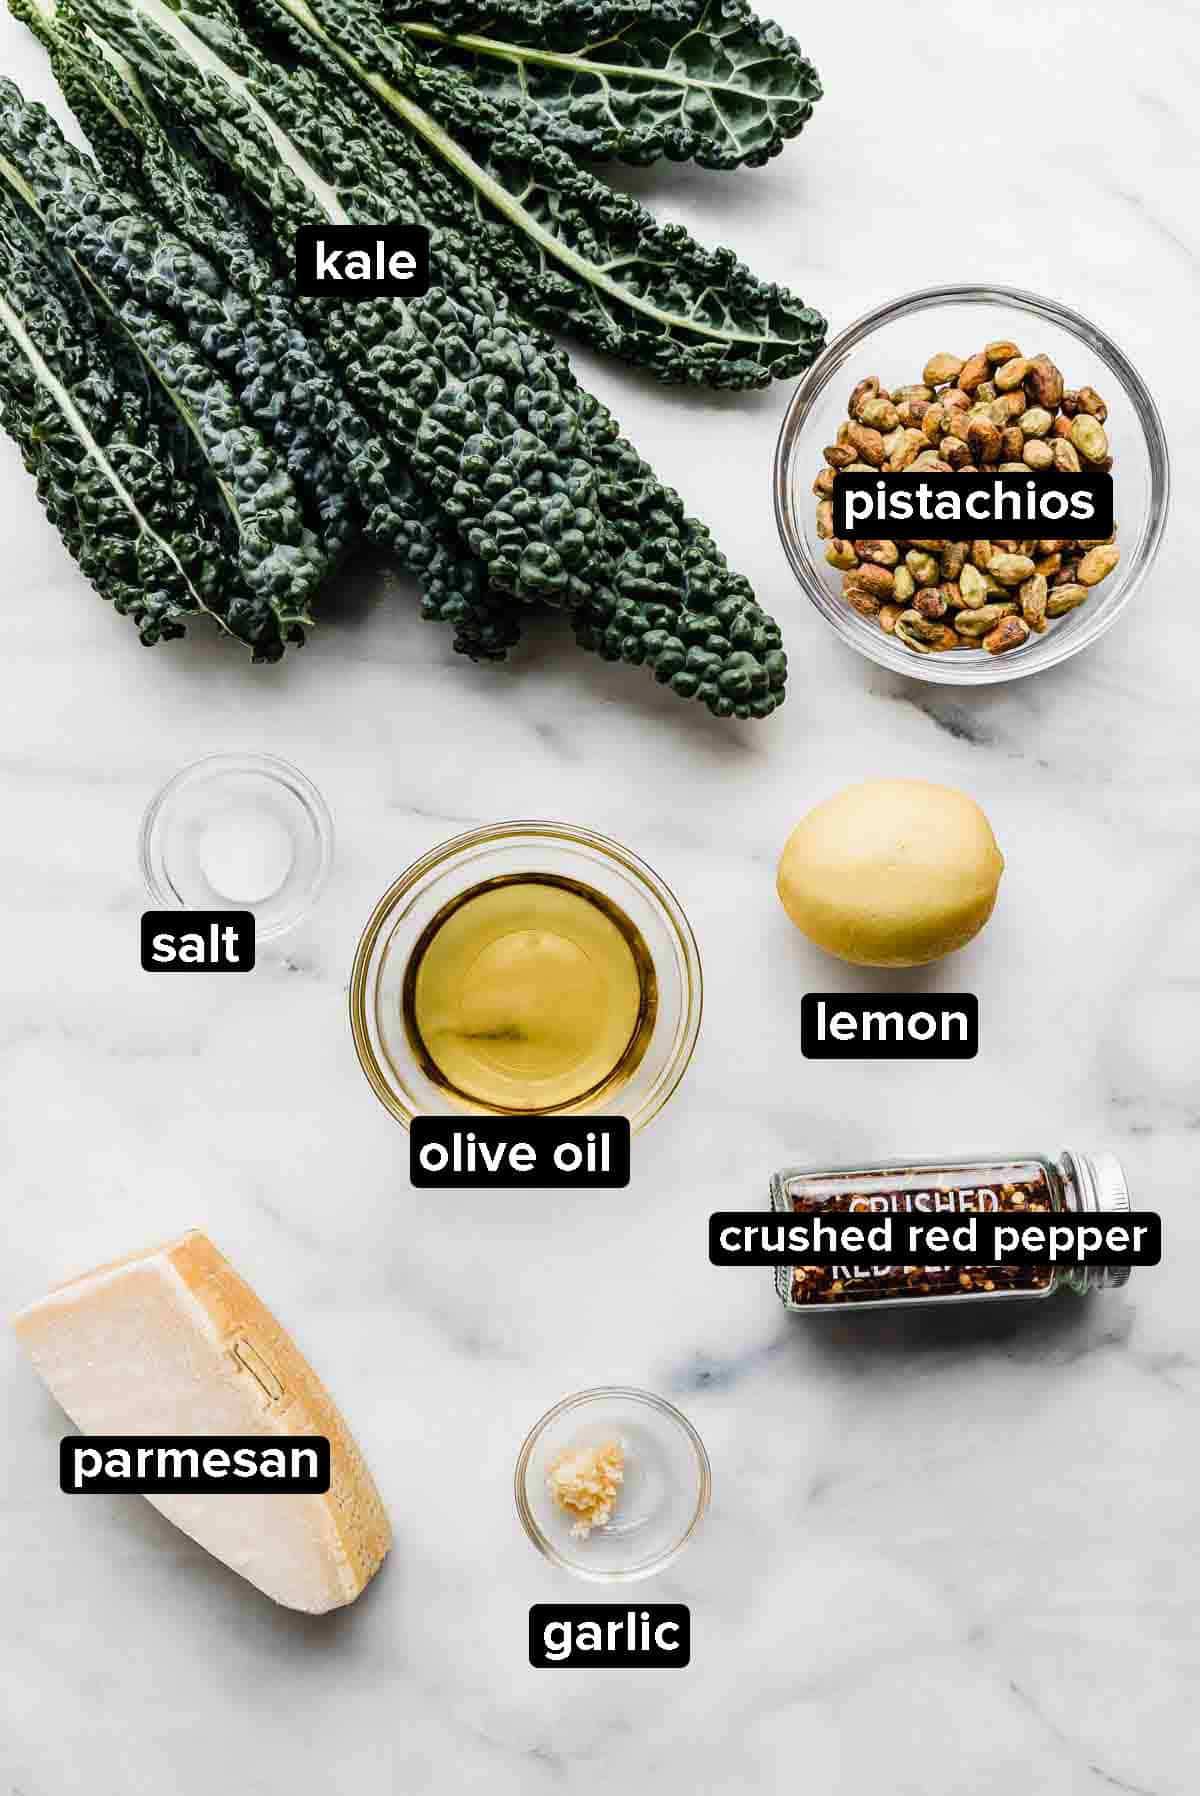 Kale Pesto ingredients on white background: kale, olive oil, pistachios, garlic, parmesan.